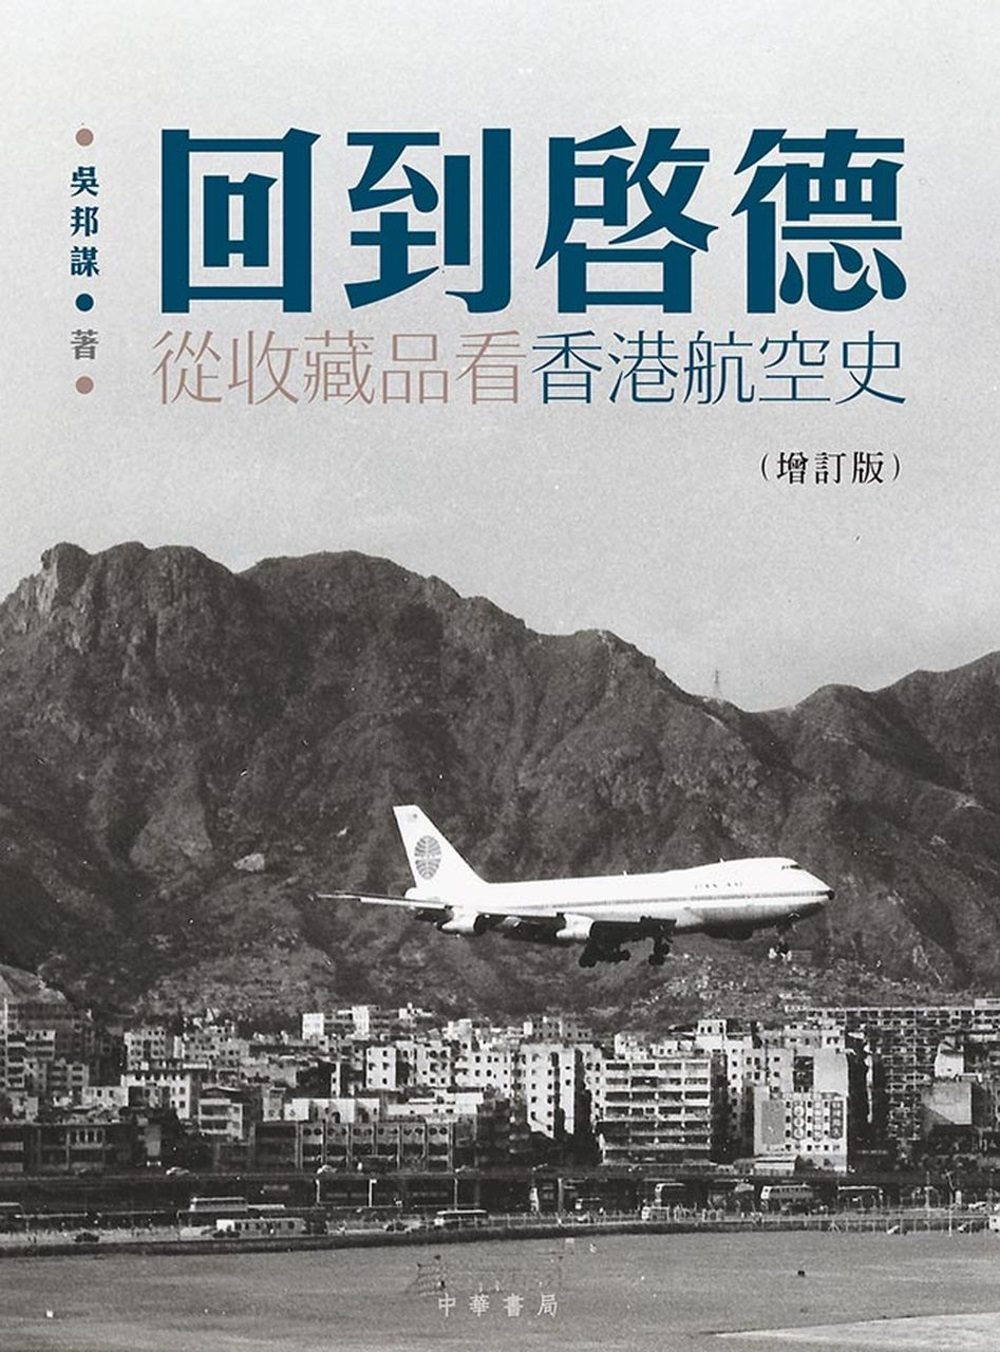 回到?德：從收藏品看香港航空史